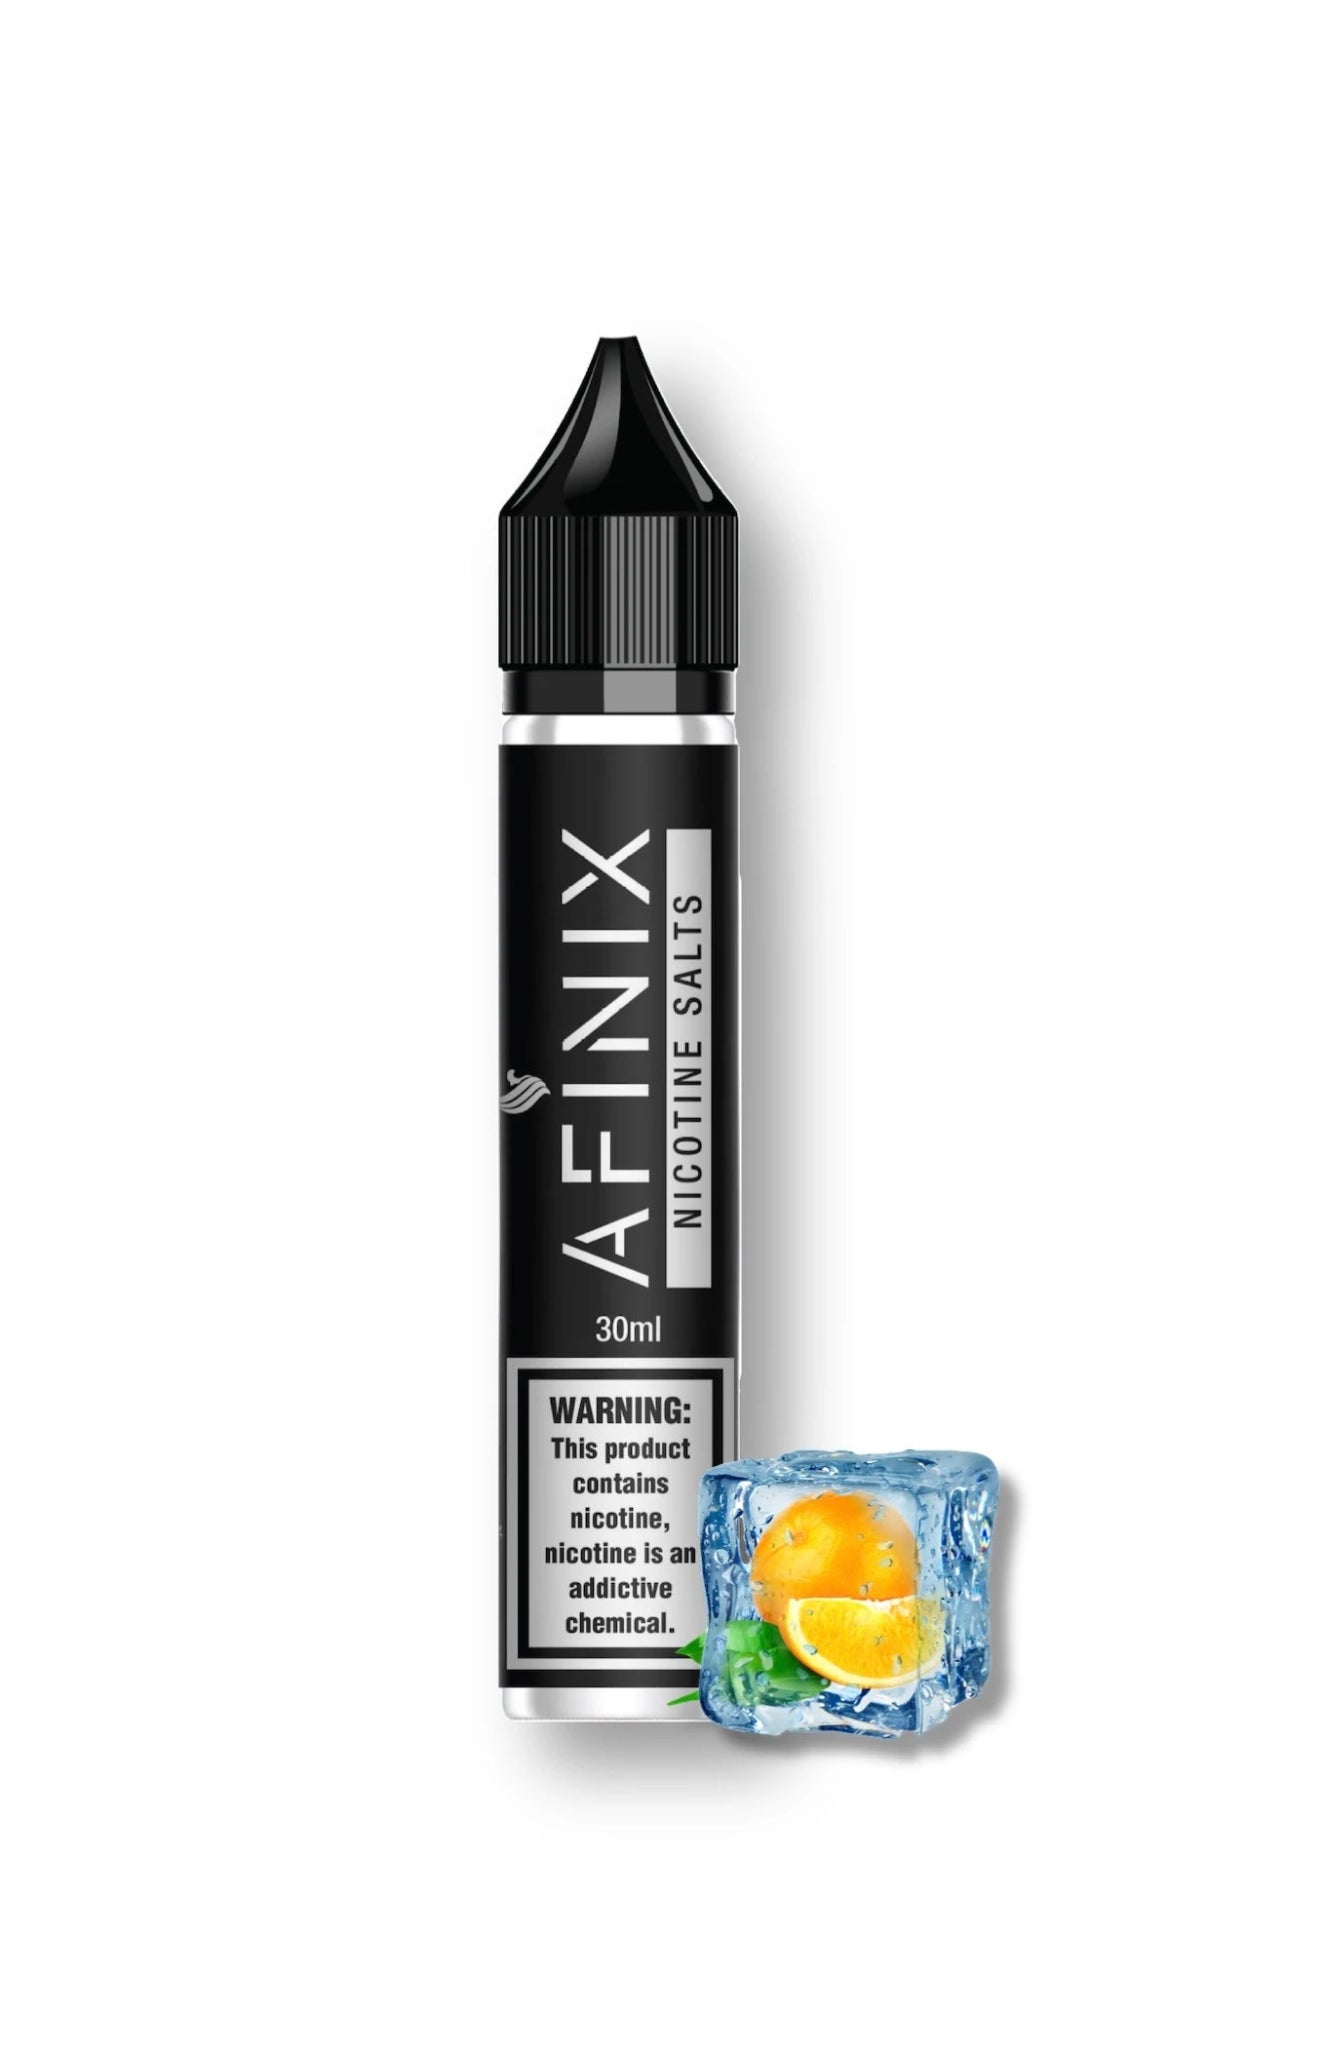 AFINIX 30ml Orange Ice - EUK